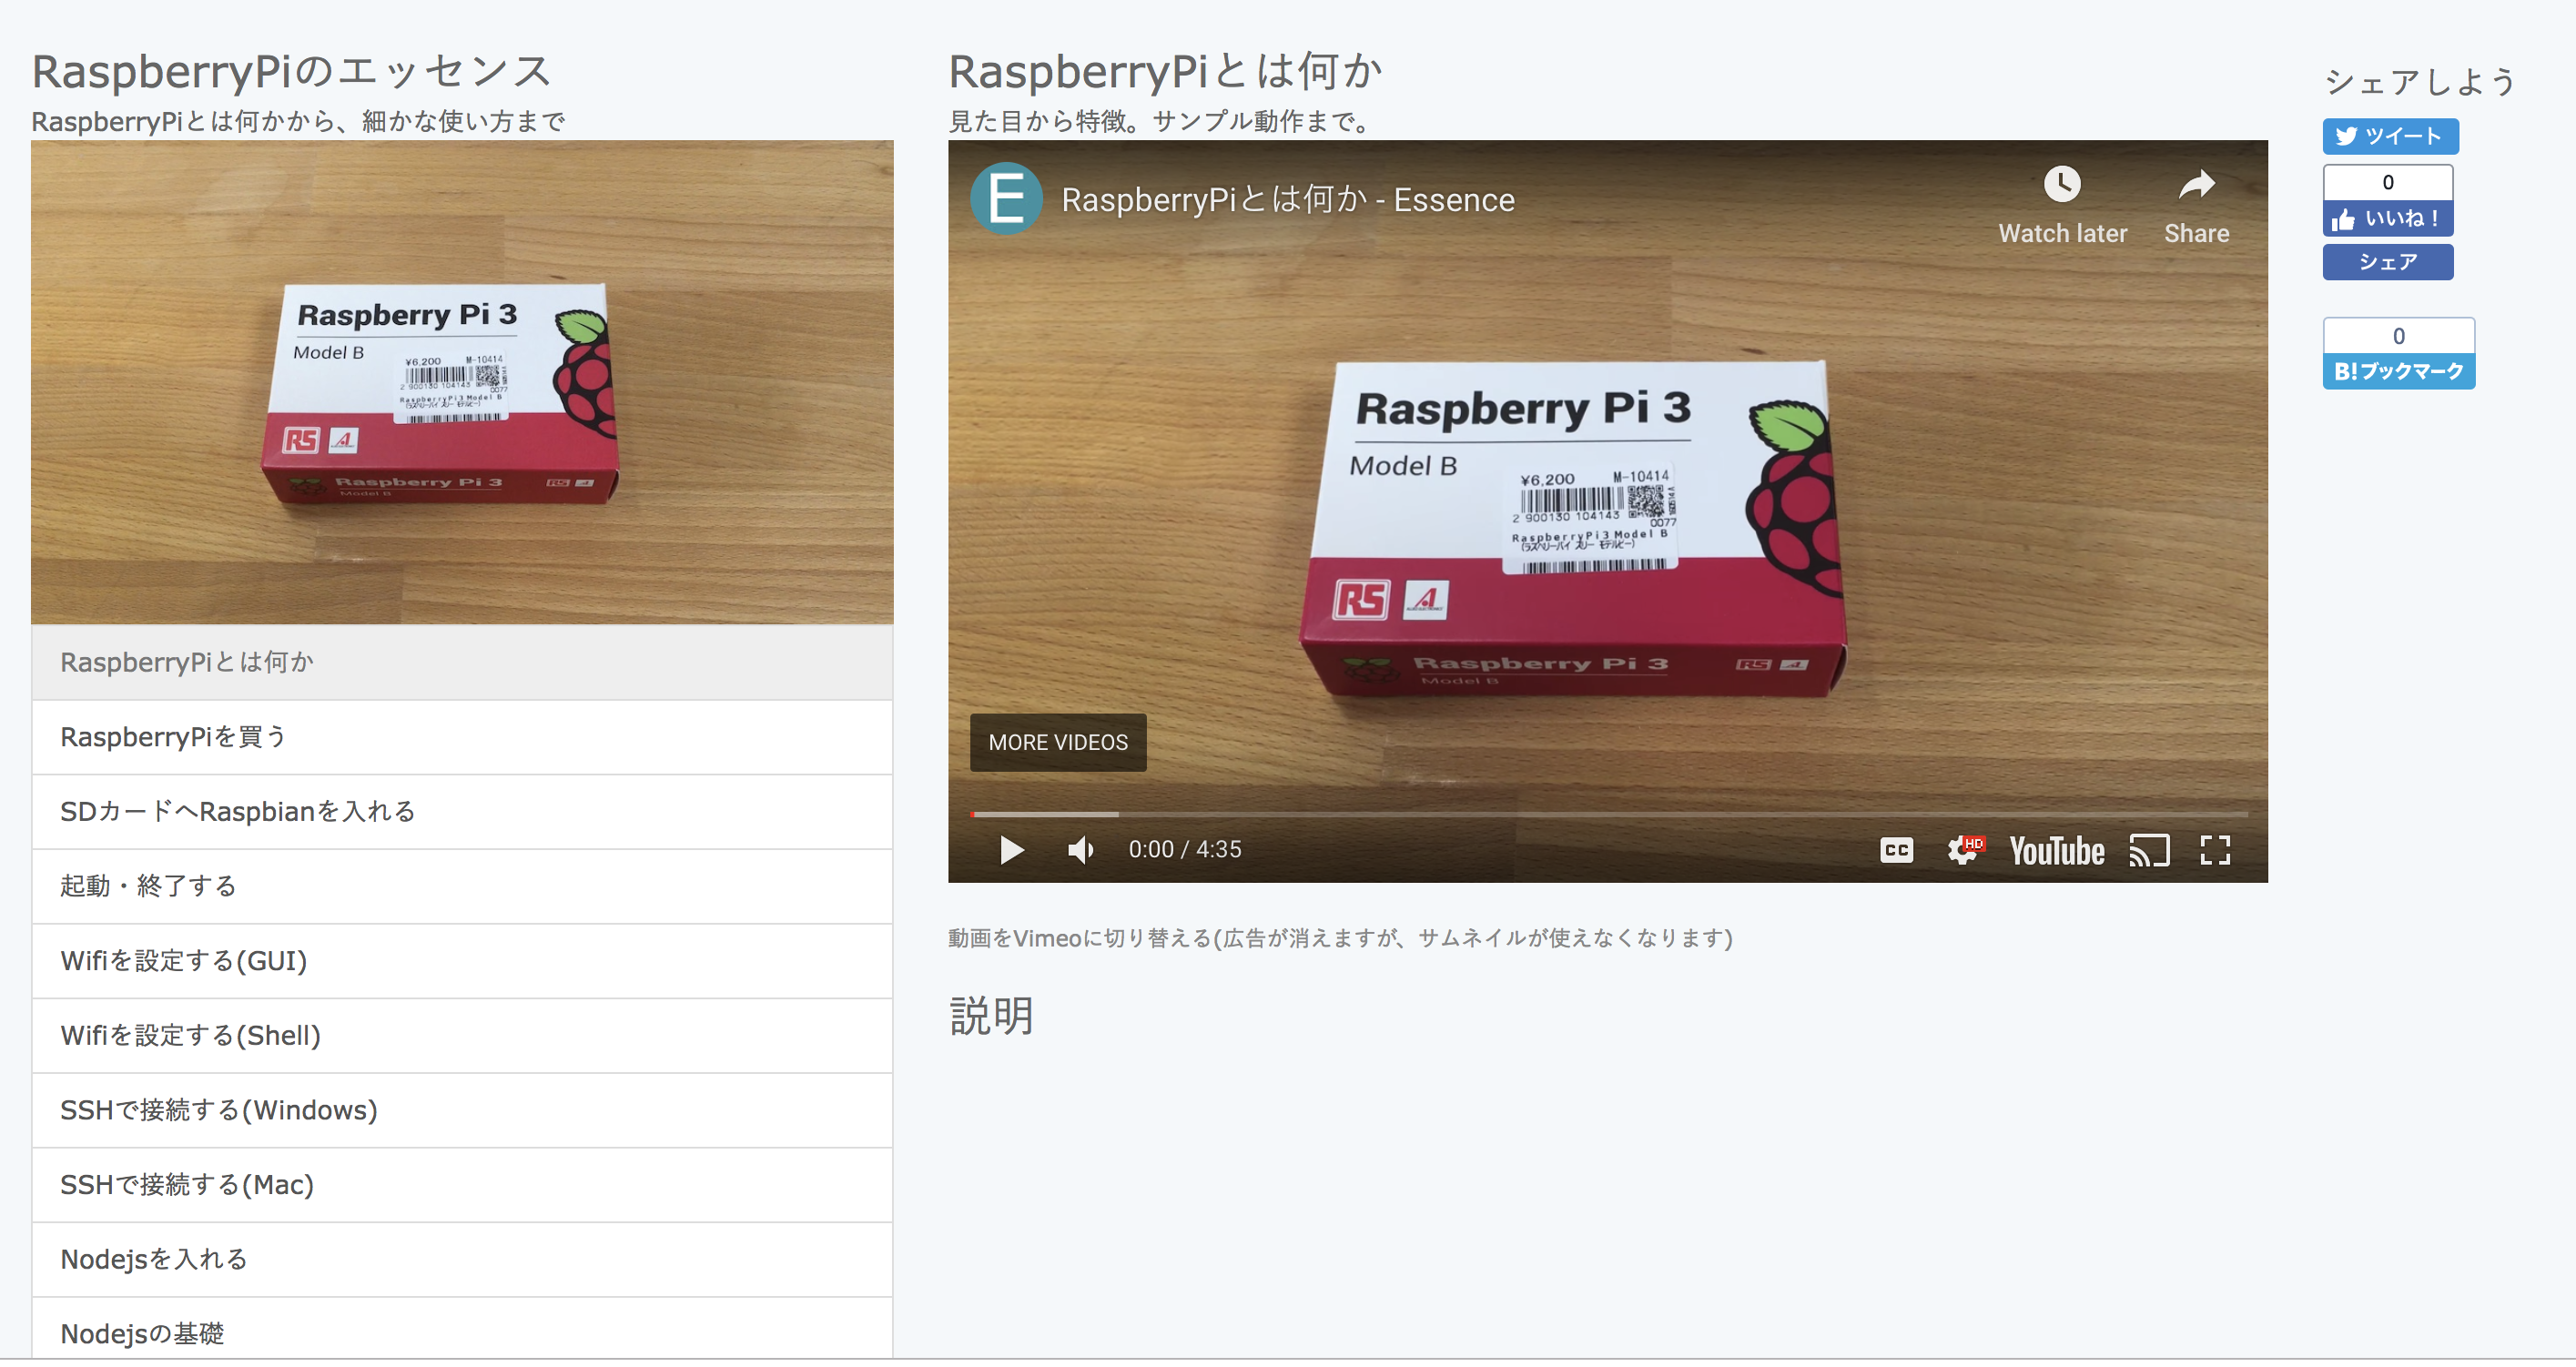 【RaspberryPiのエッセンス】RaspberryPiとは何か - Essence 2018-11-25 14-05-26.png